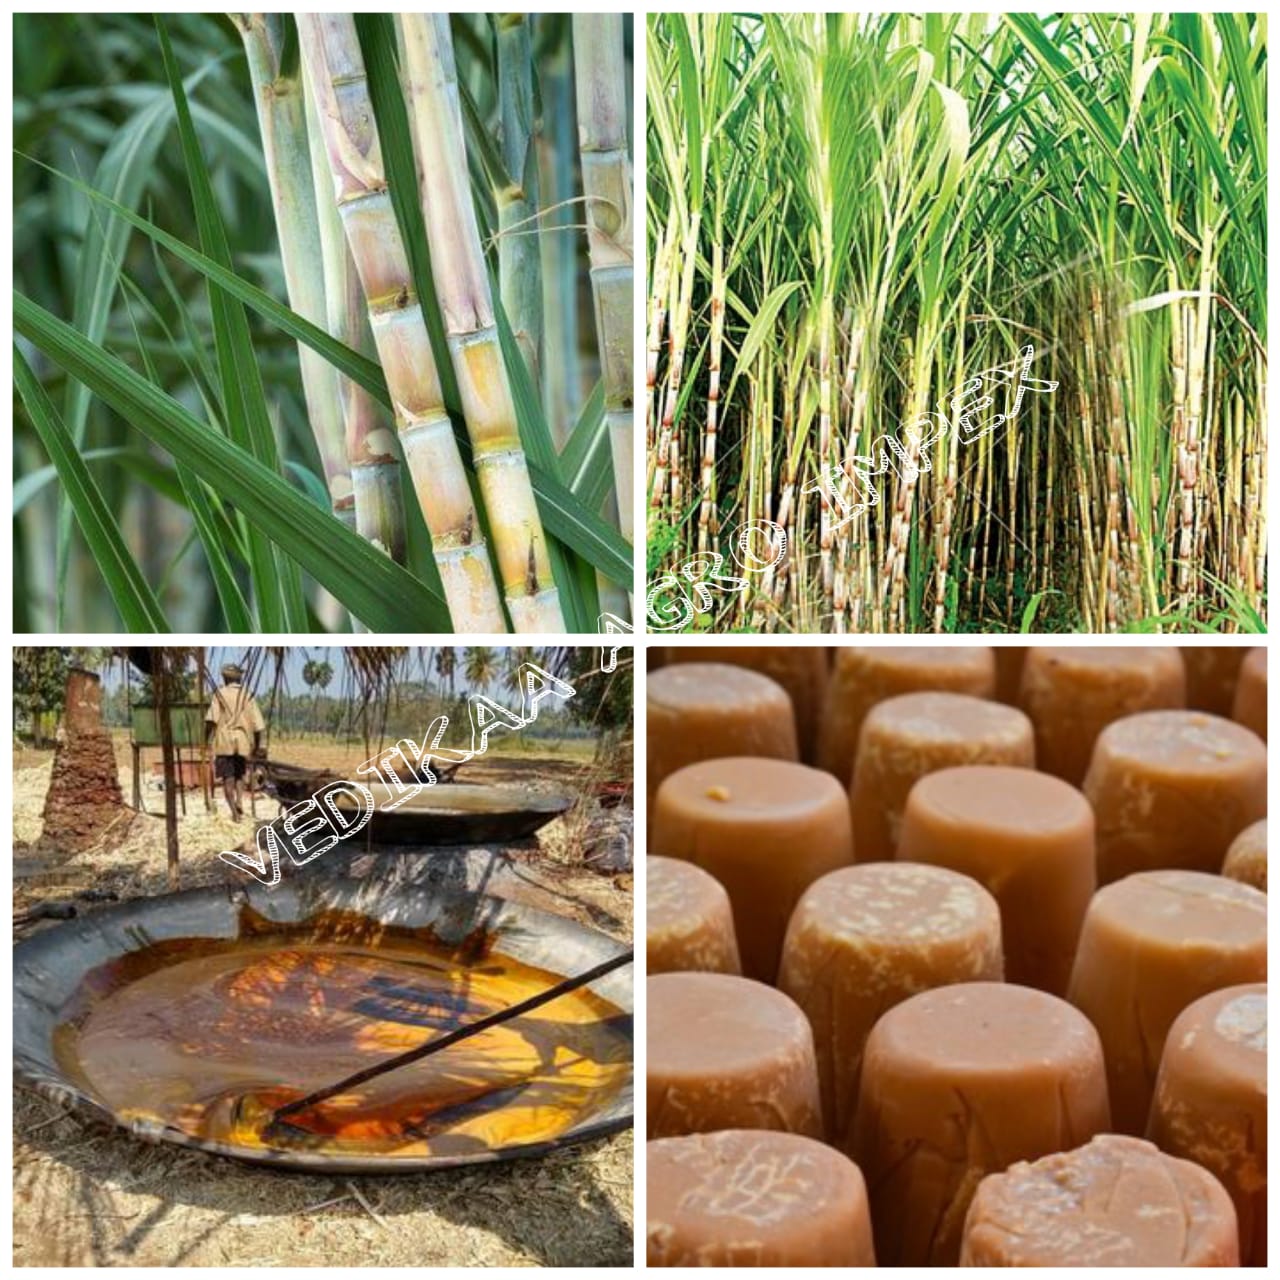 sugarcane crop com